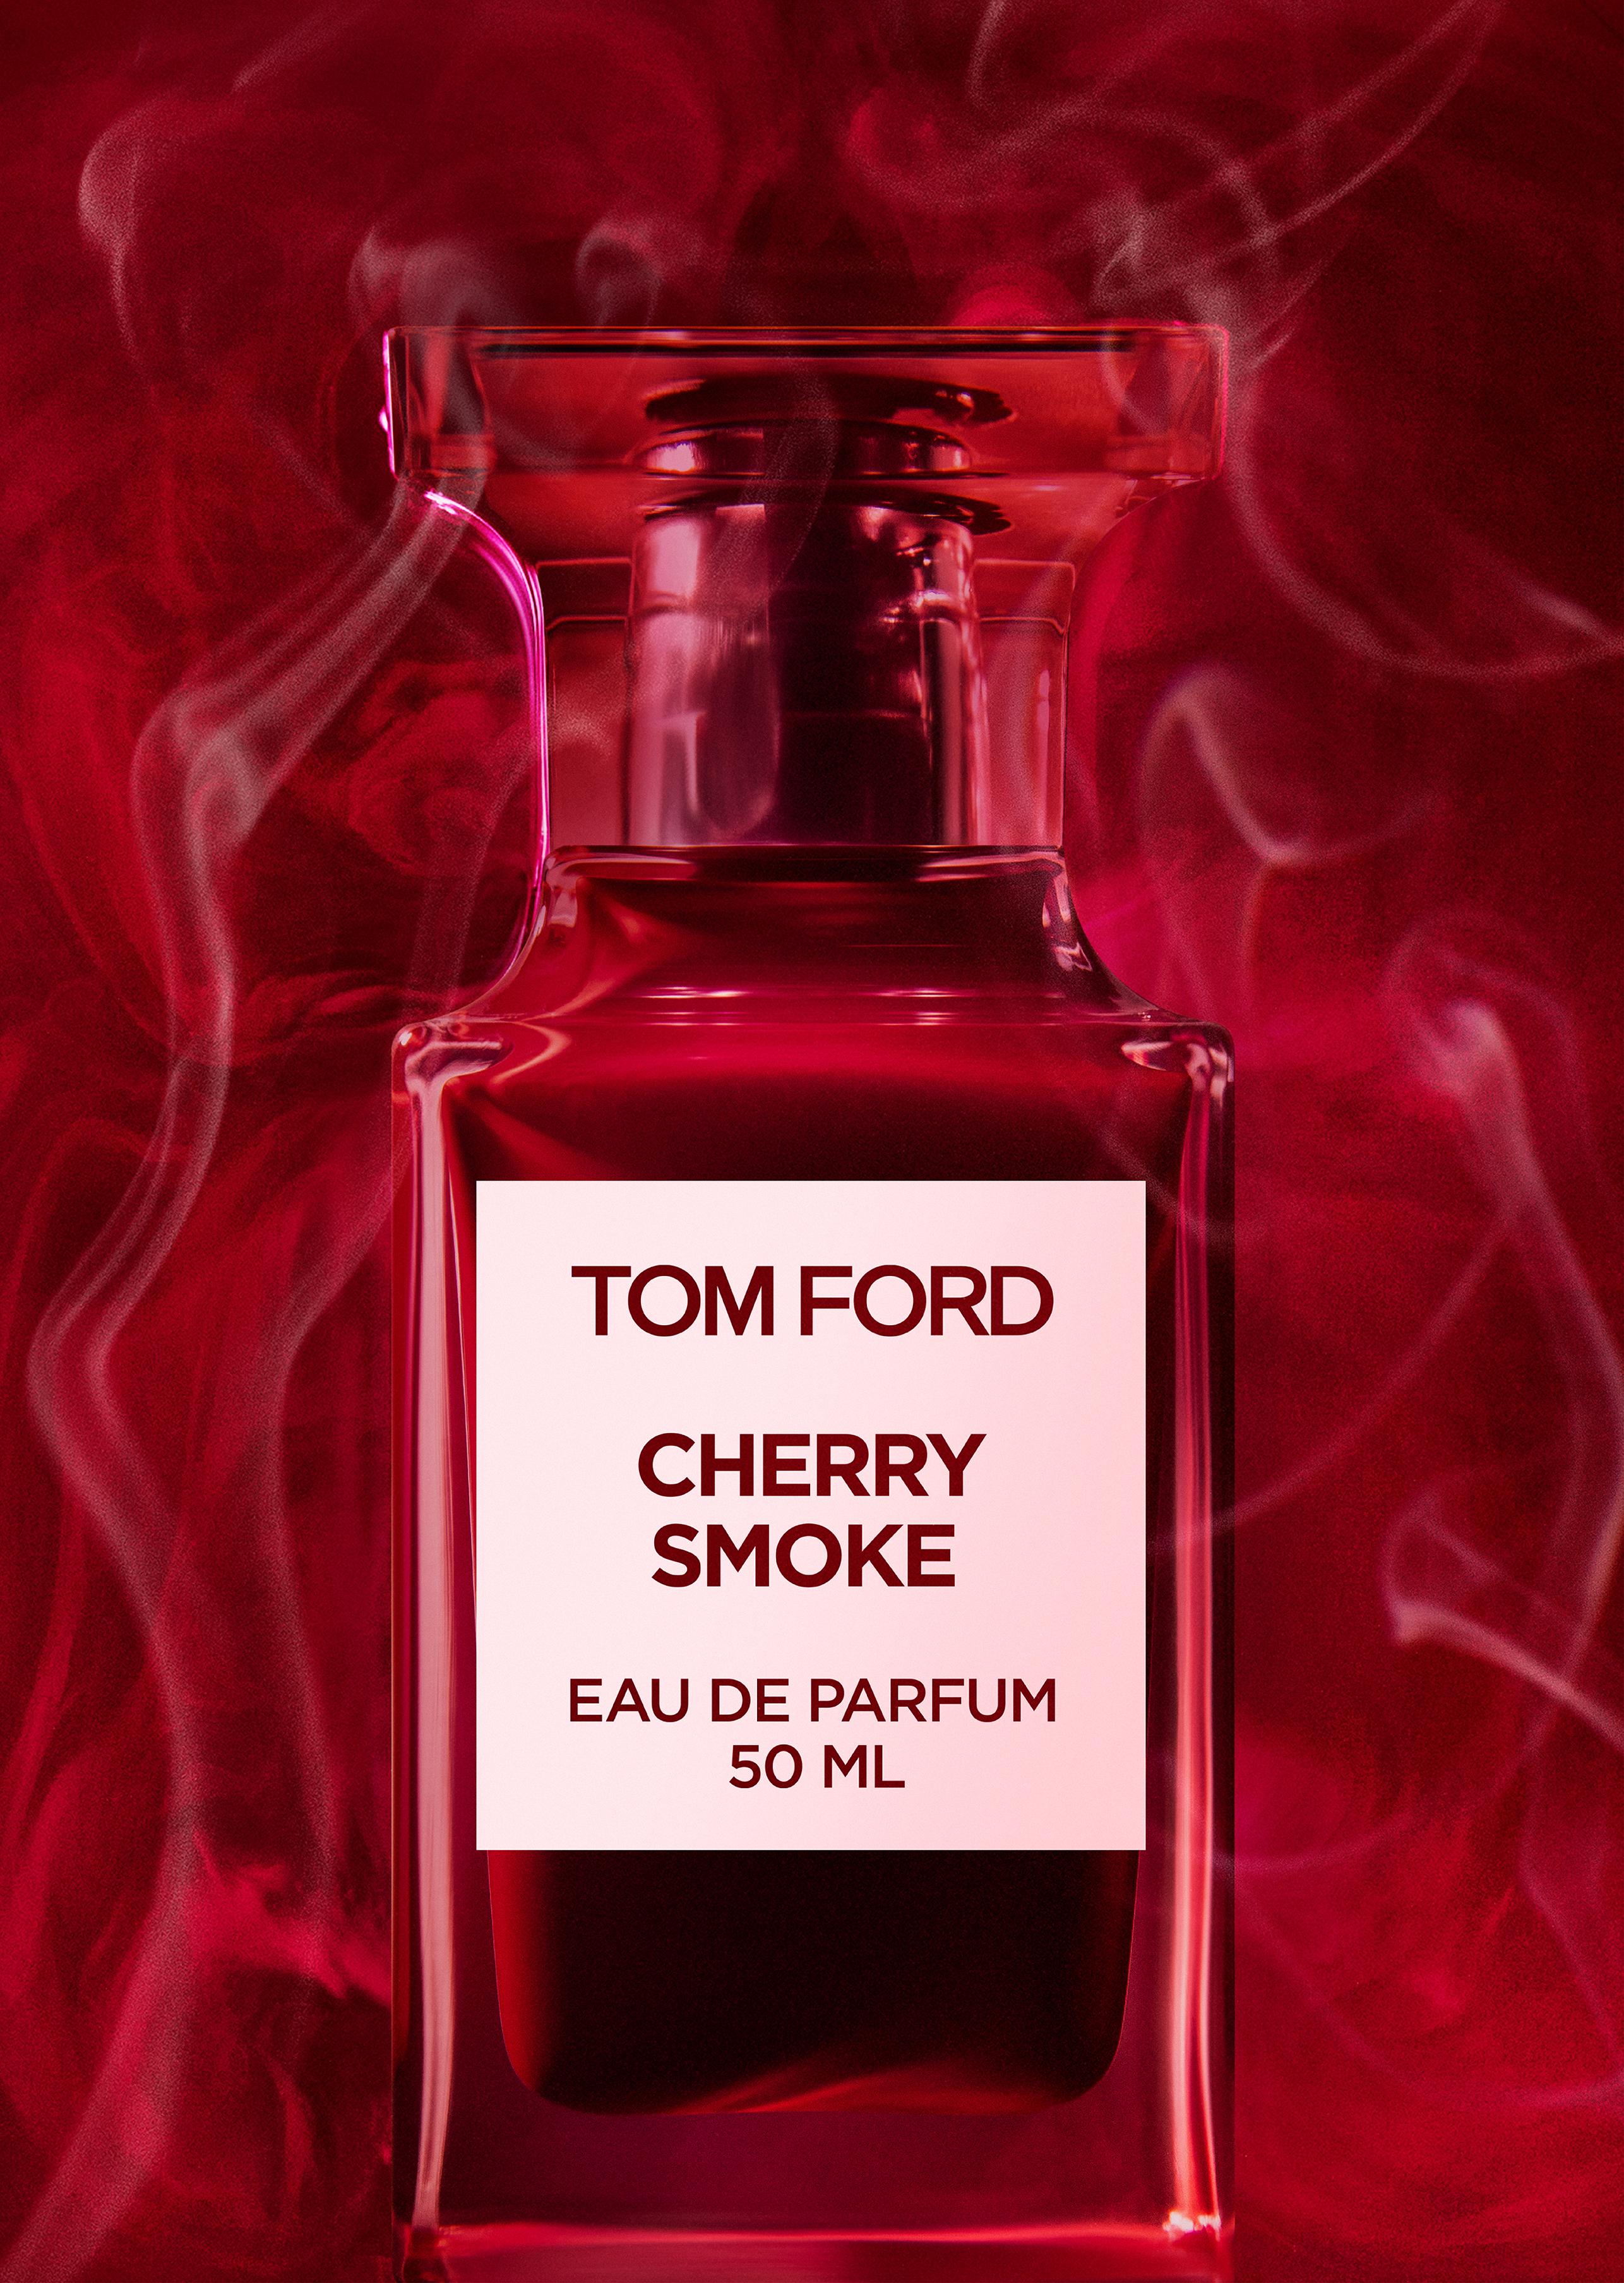 Tom Ford CHERRY SMOKE EAU DE PARFUM 